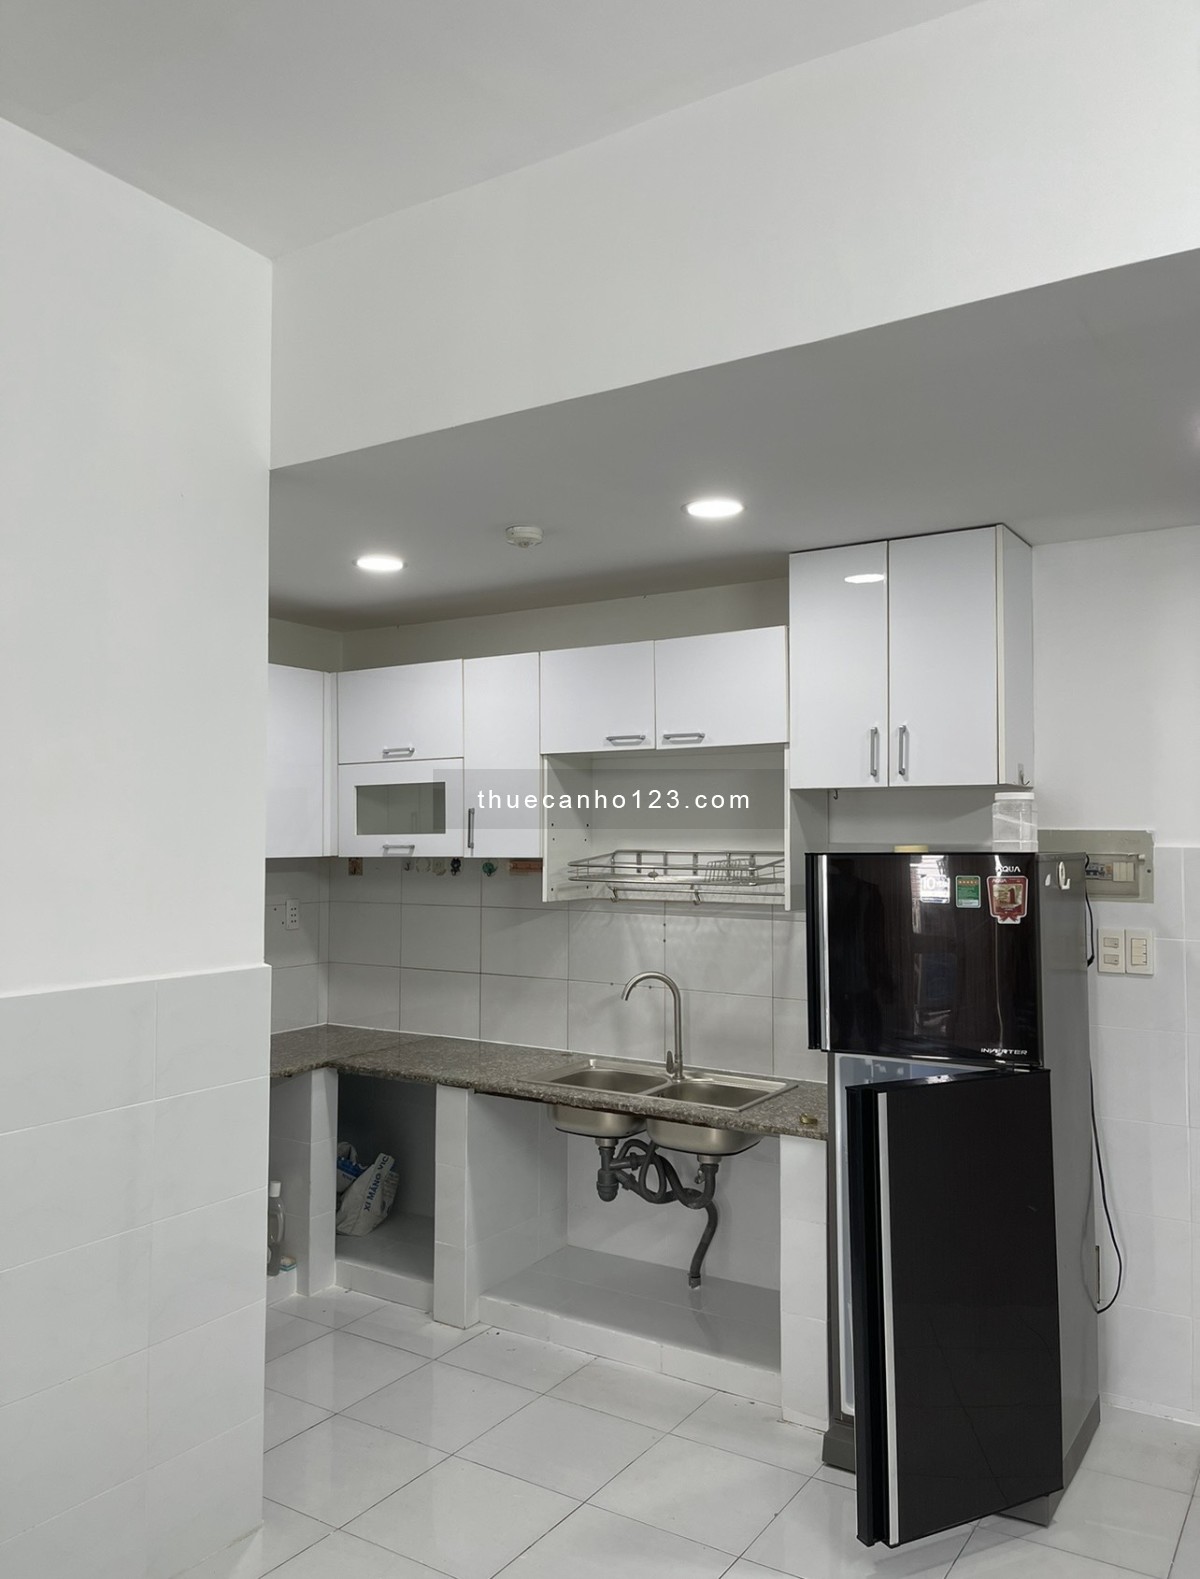 Cho thuê chung cư sài gòn towe hẻm 83 Thoại Ngọc Hầu quận Tân Phú, giá rẻ 7,5tr, có máy lạnh ntcb